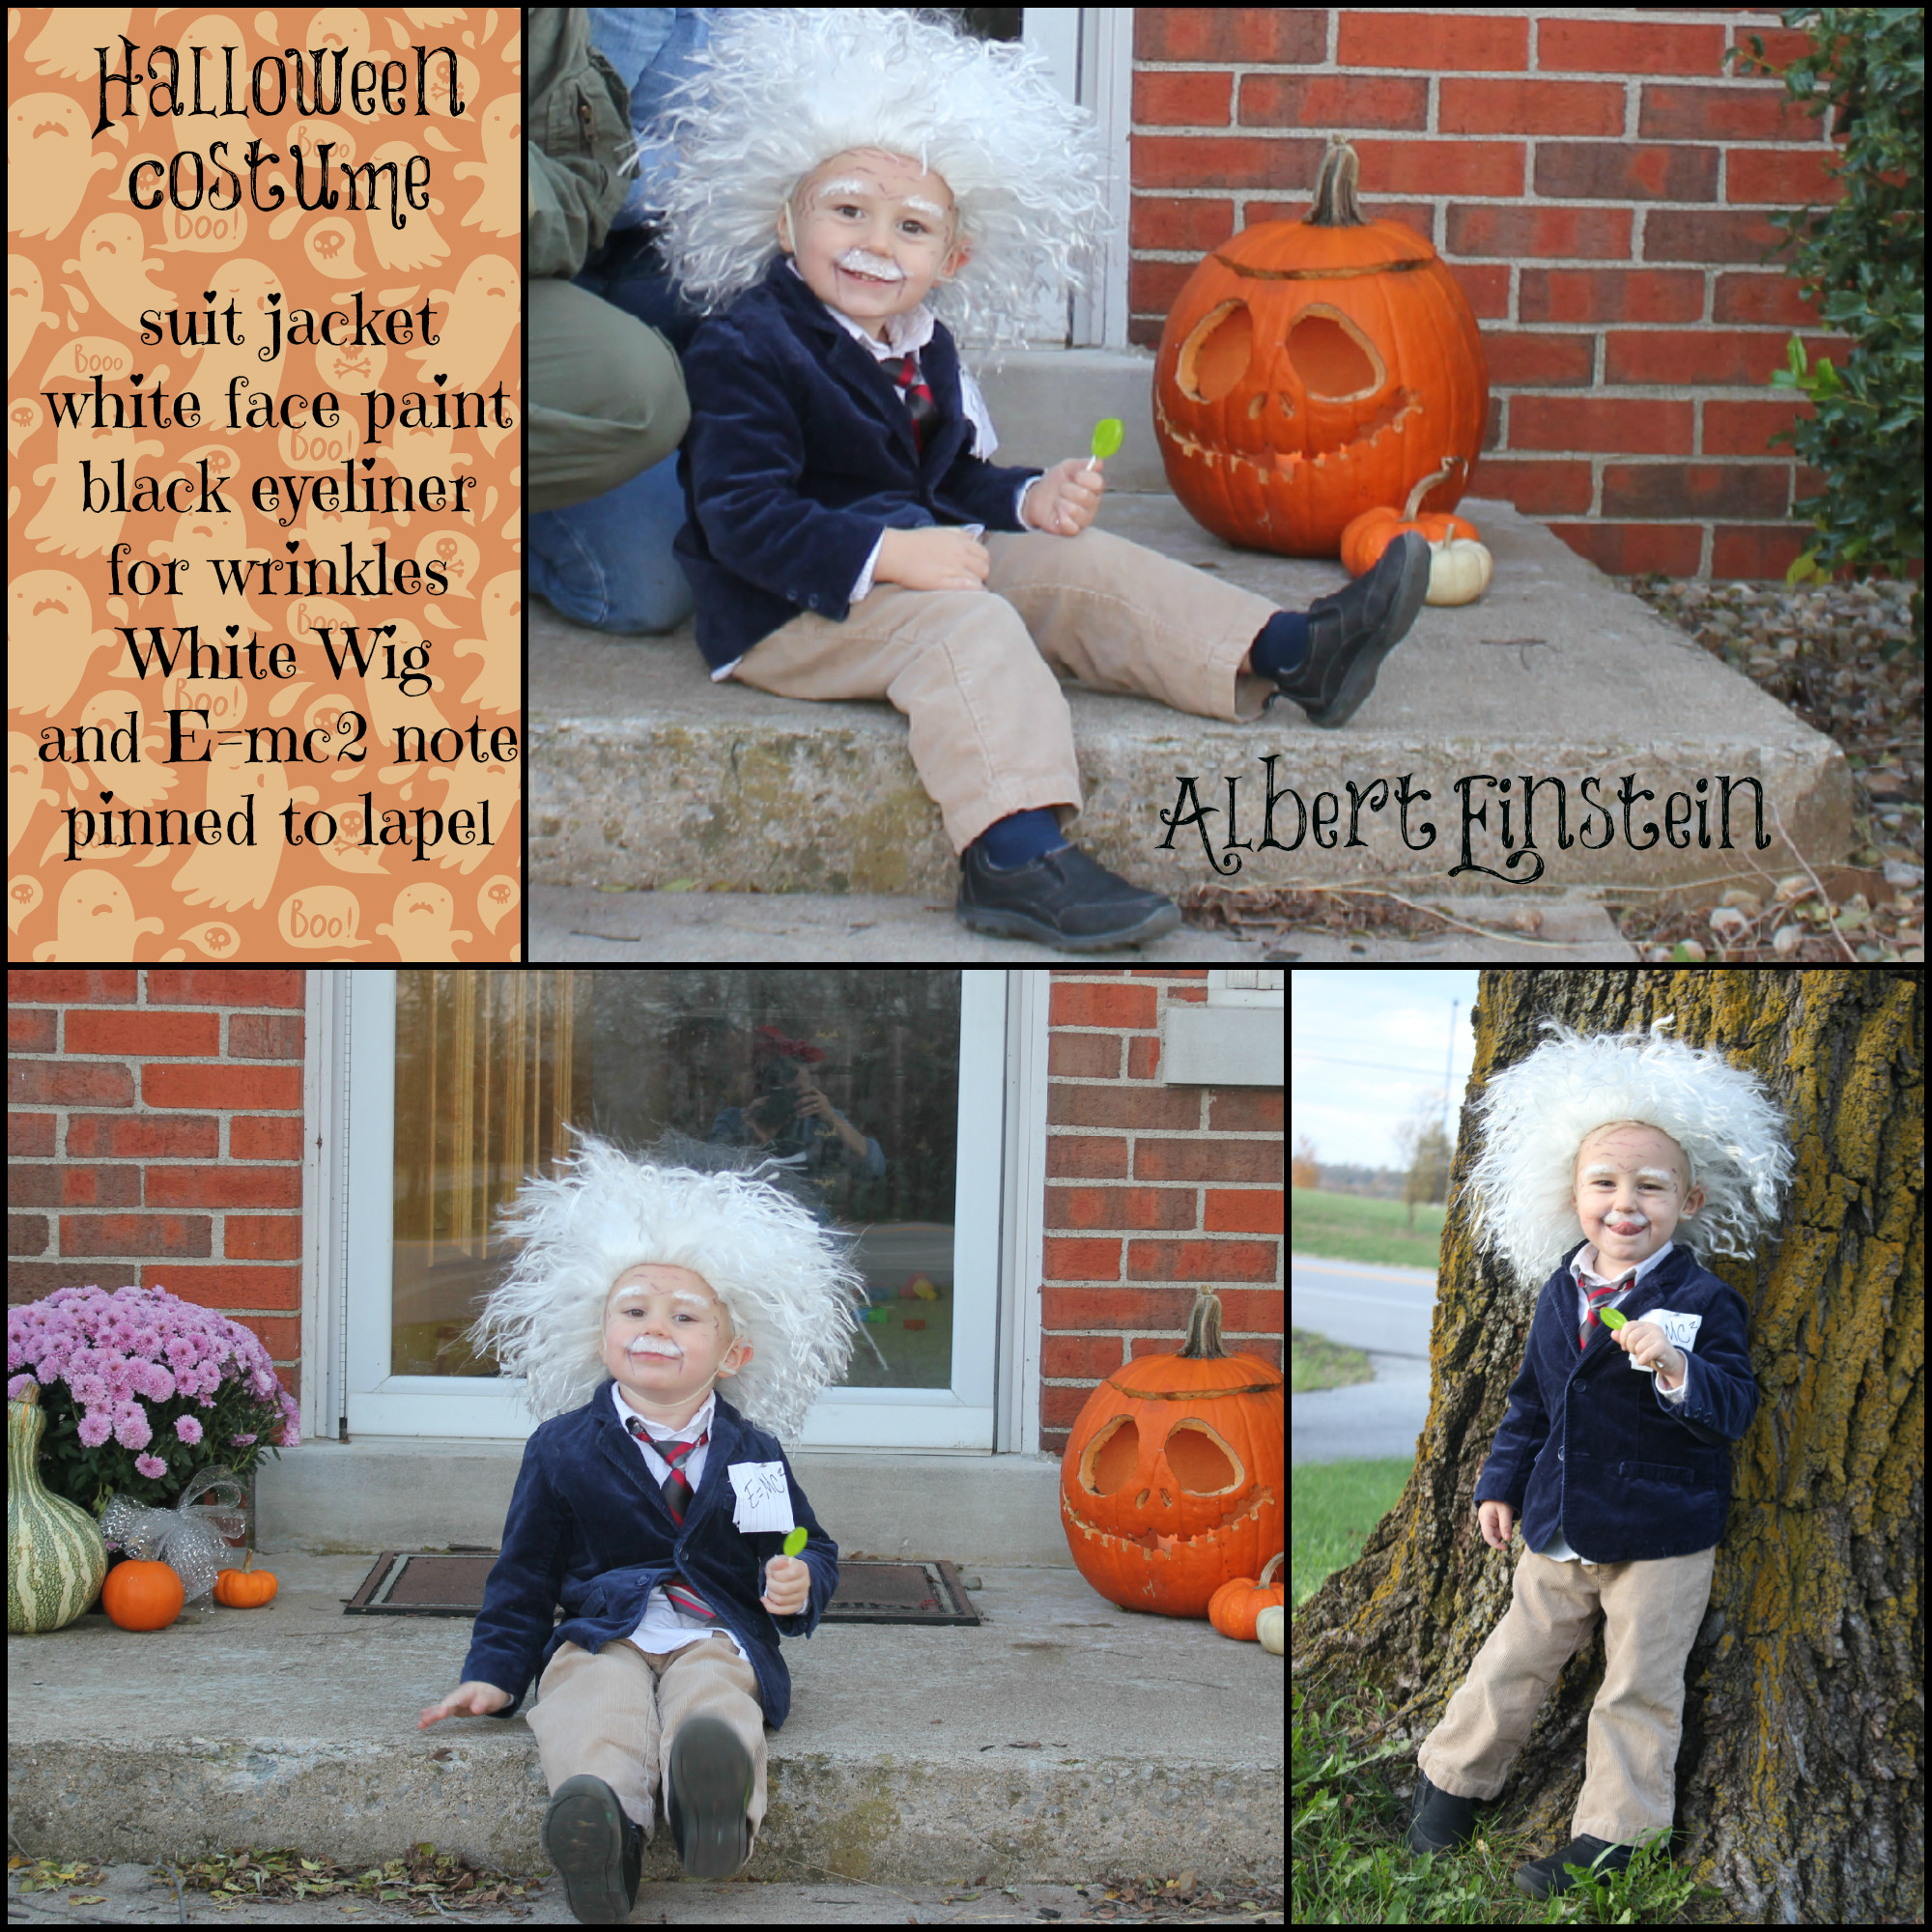 Best ideas about Albert Einstein Costume DIY
. Save or Pin Child s Halloween Costume Albert Einstein Now.